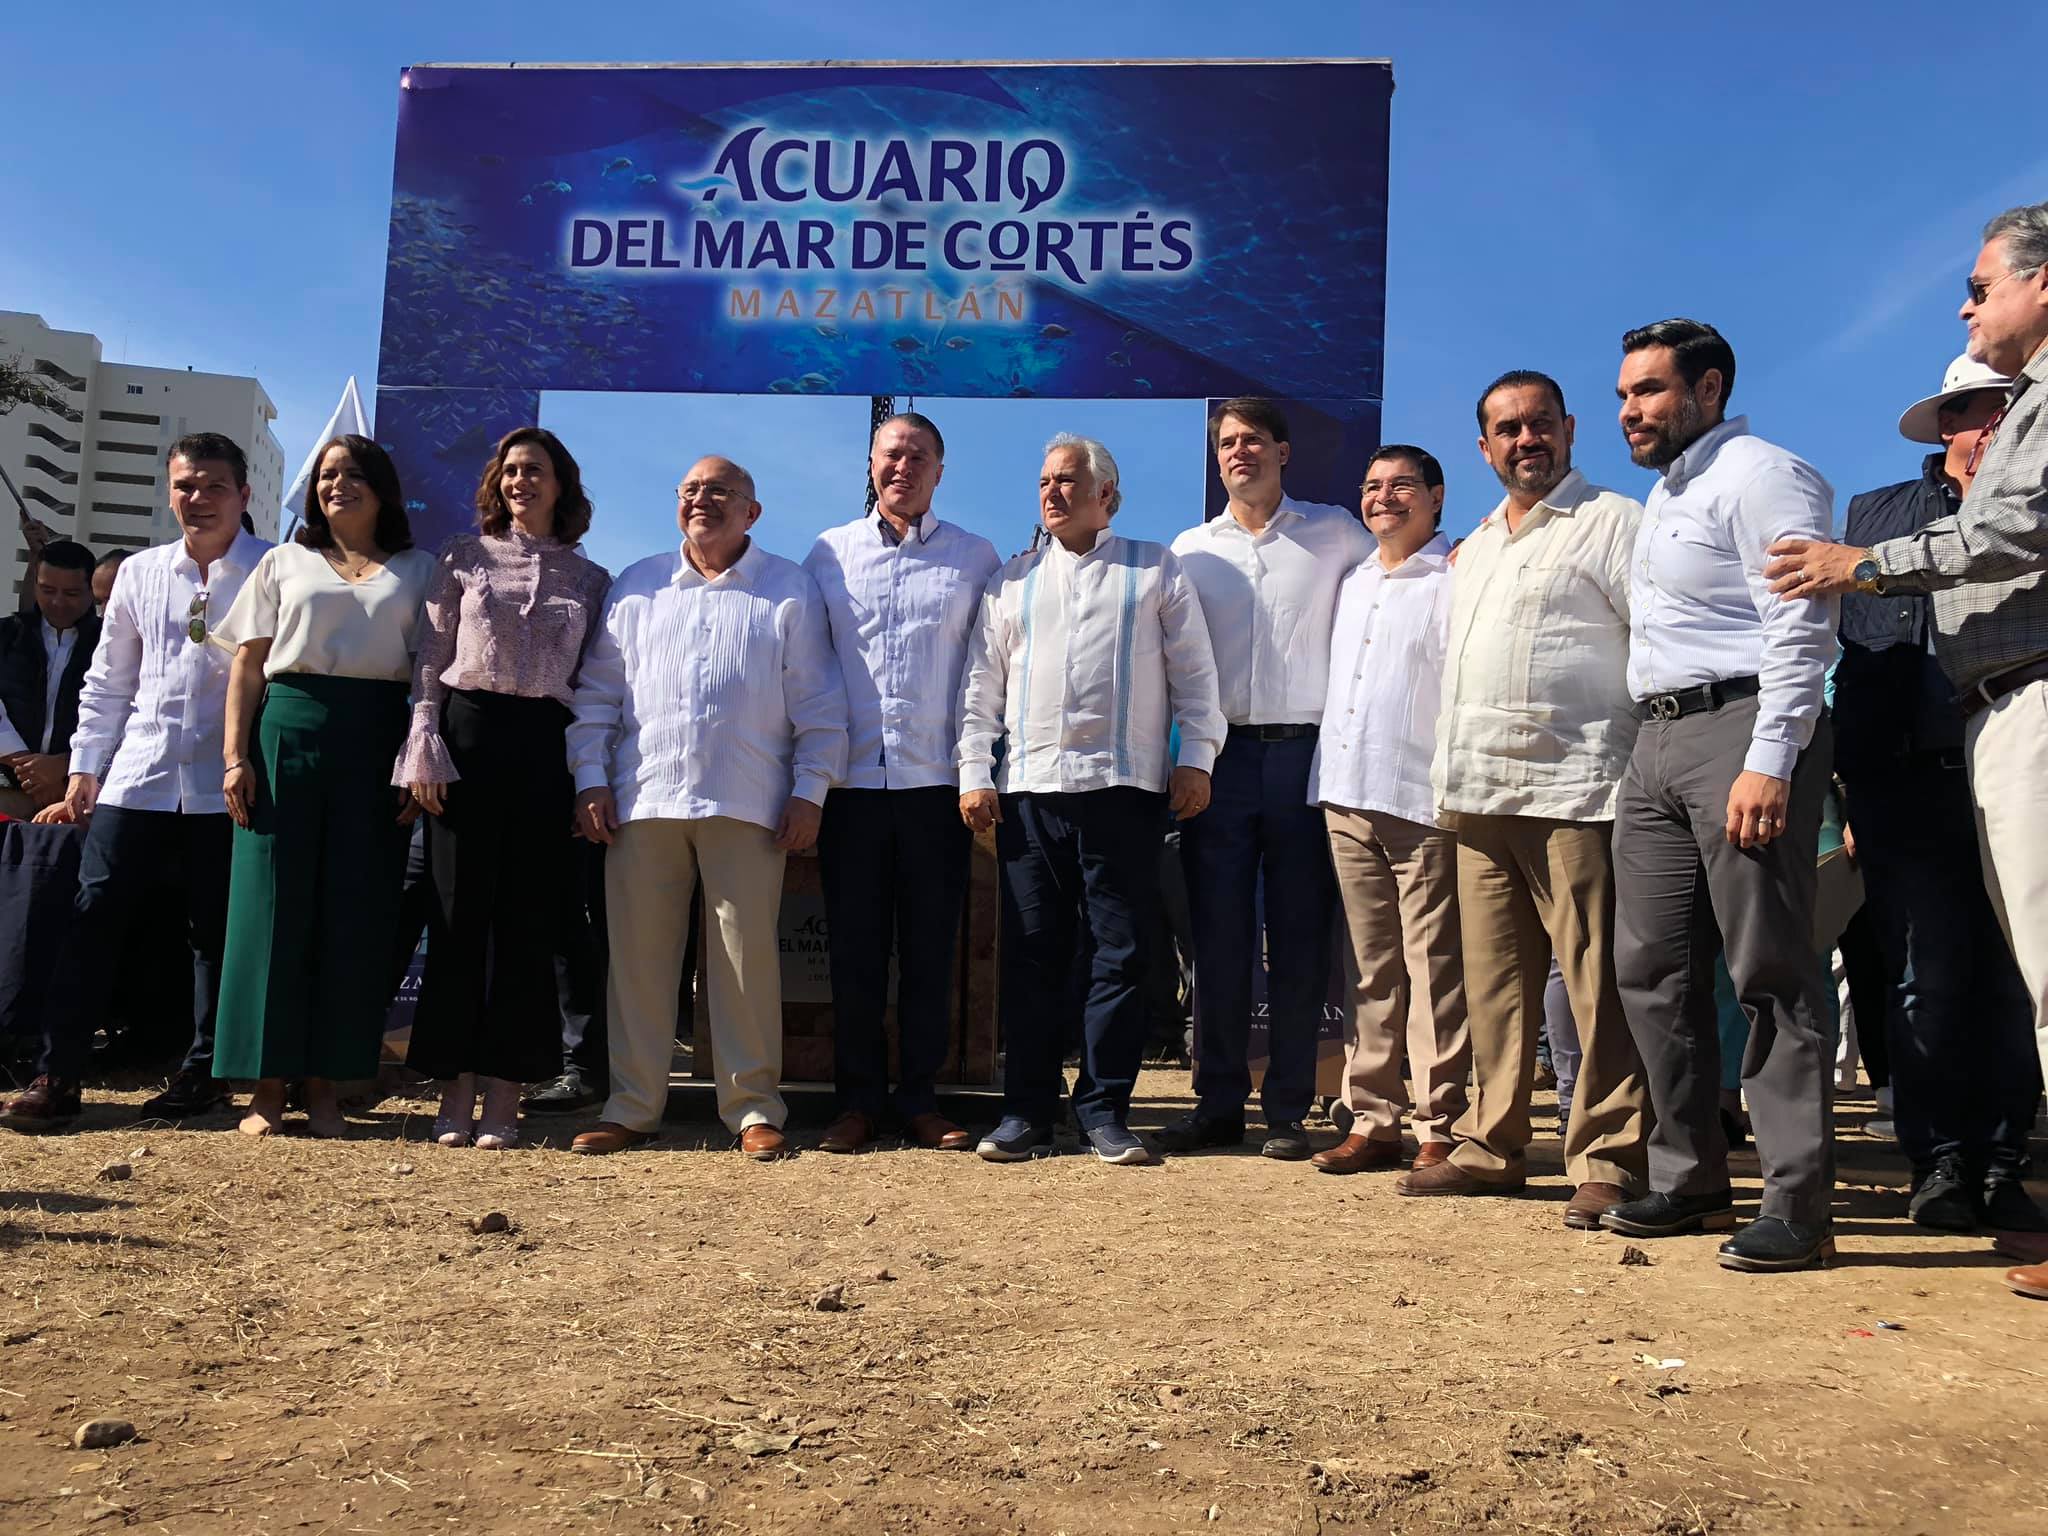 Acuario Mar de Cortés Primera Piedra 2019 (1)